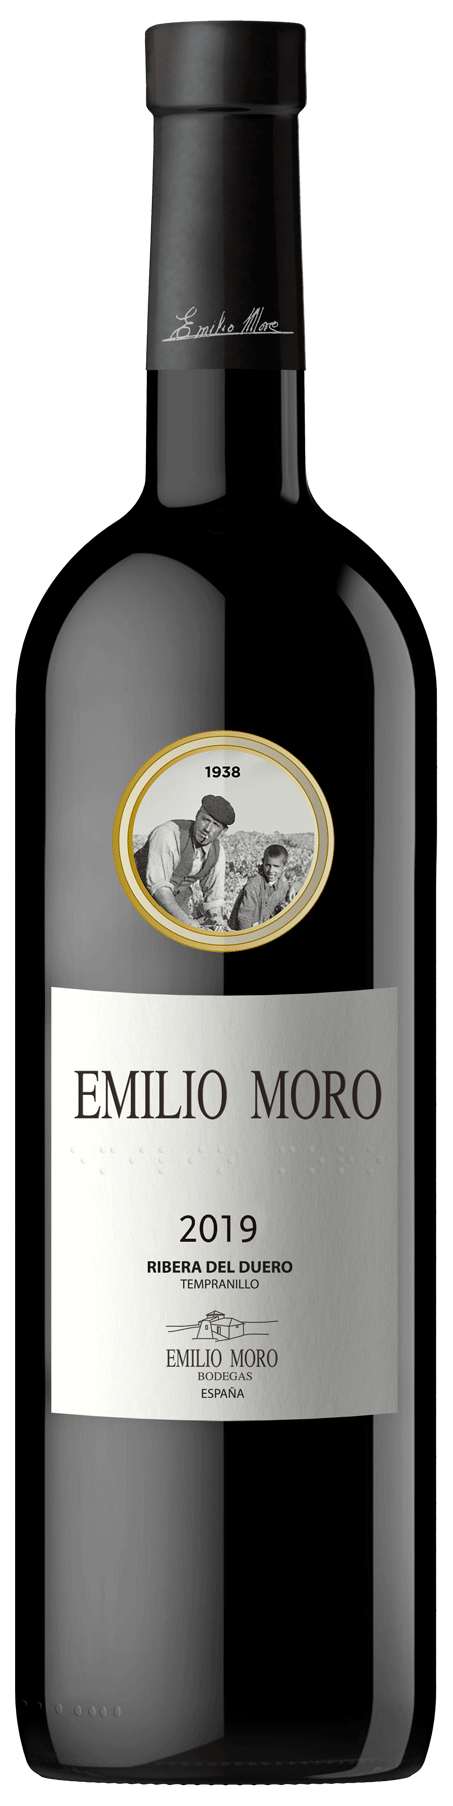 Emilio Moro - Emilio Moro 2019